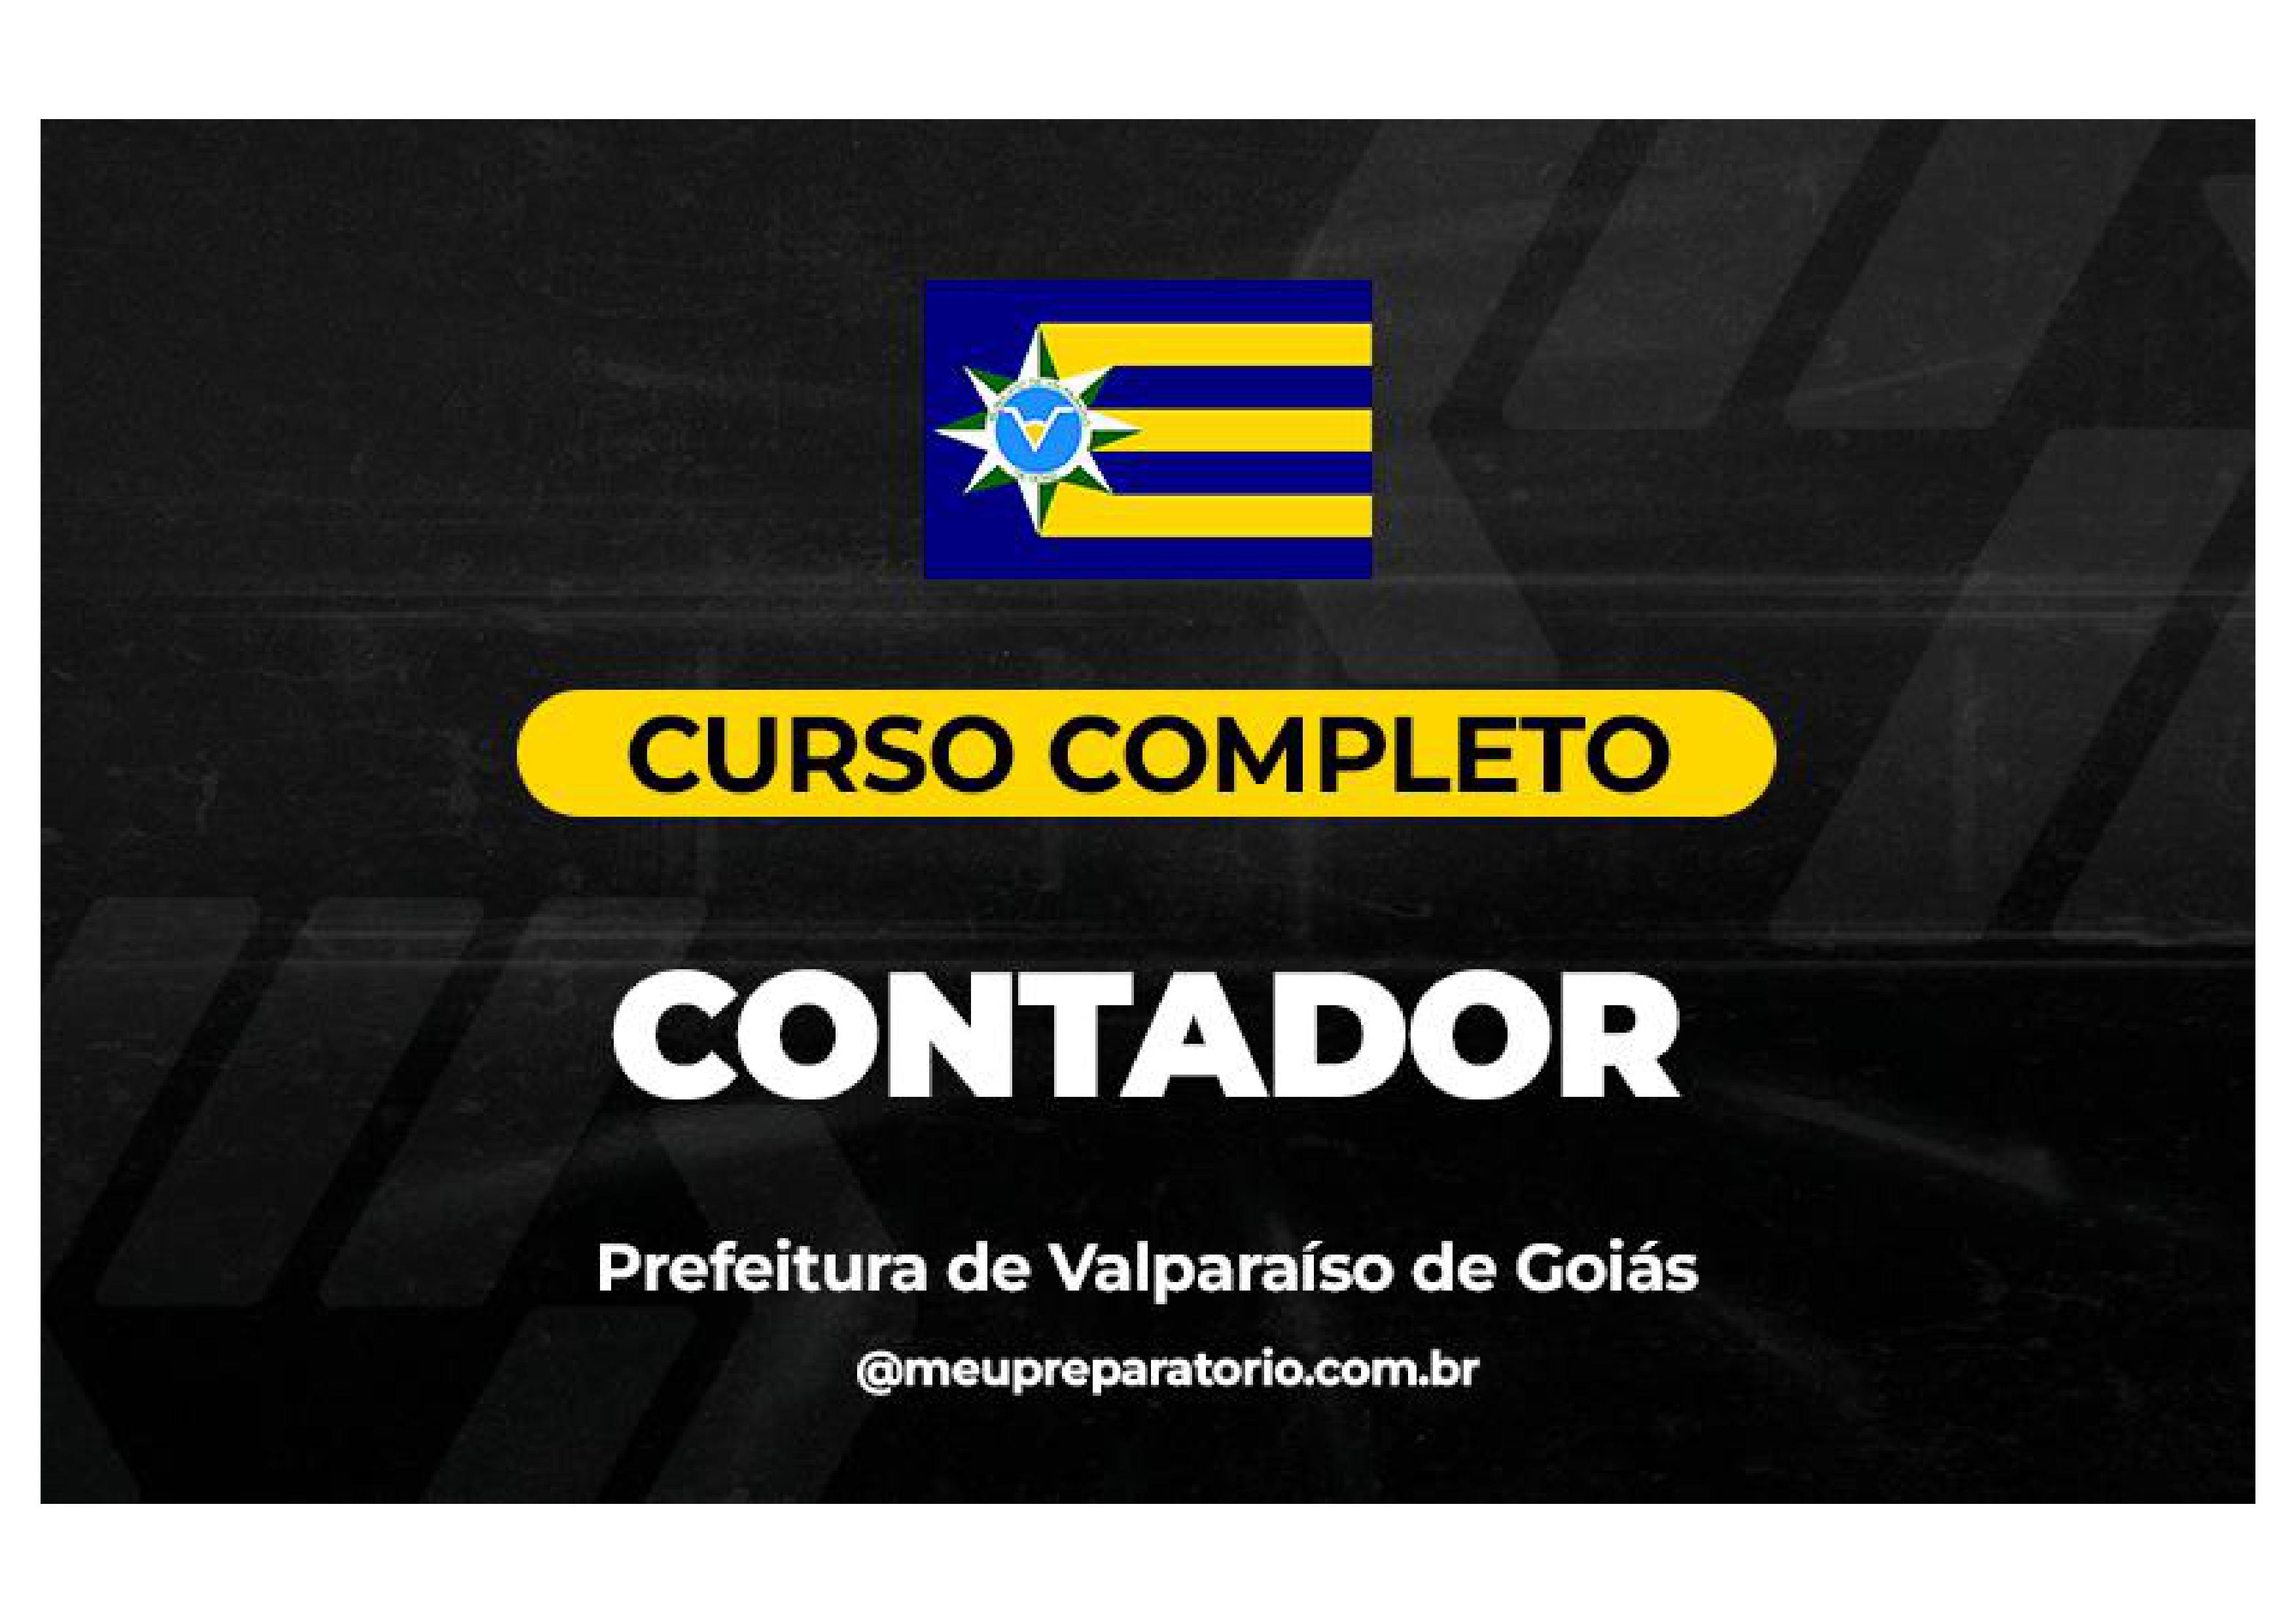 Contador - Valparaíso (GO)